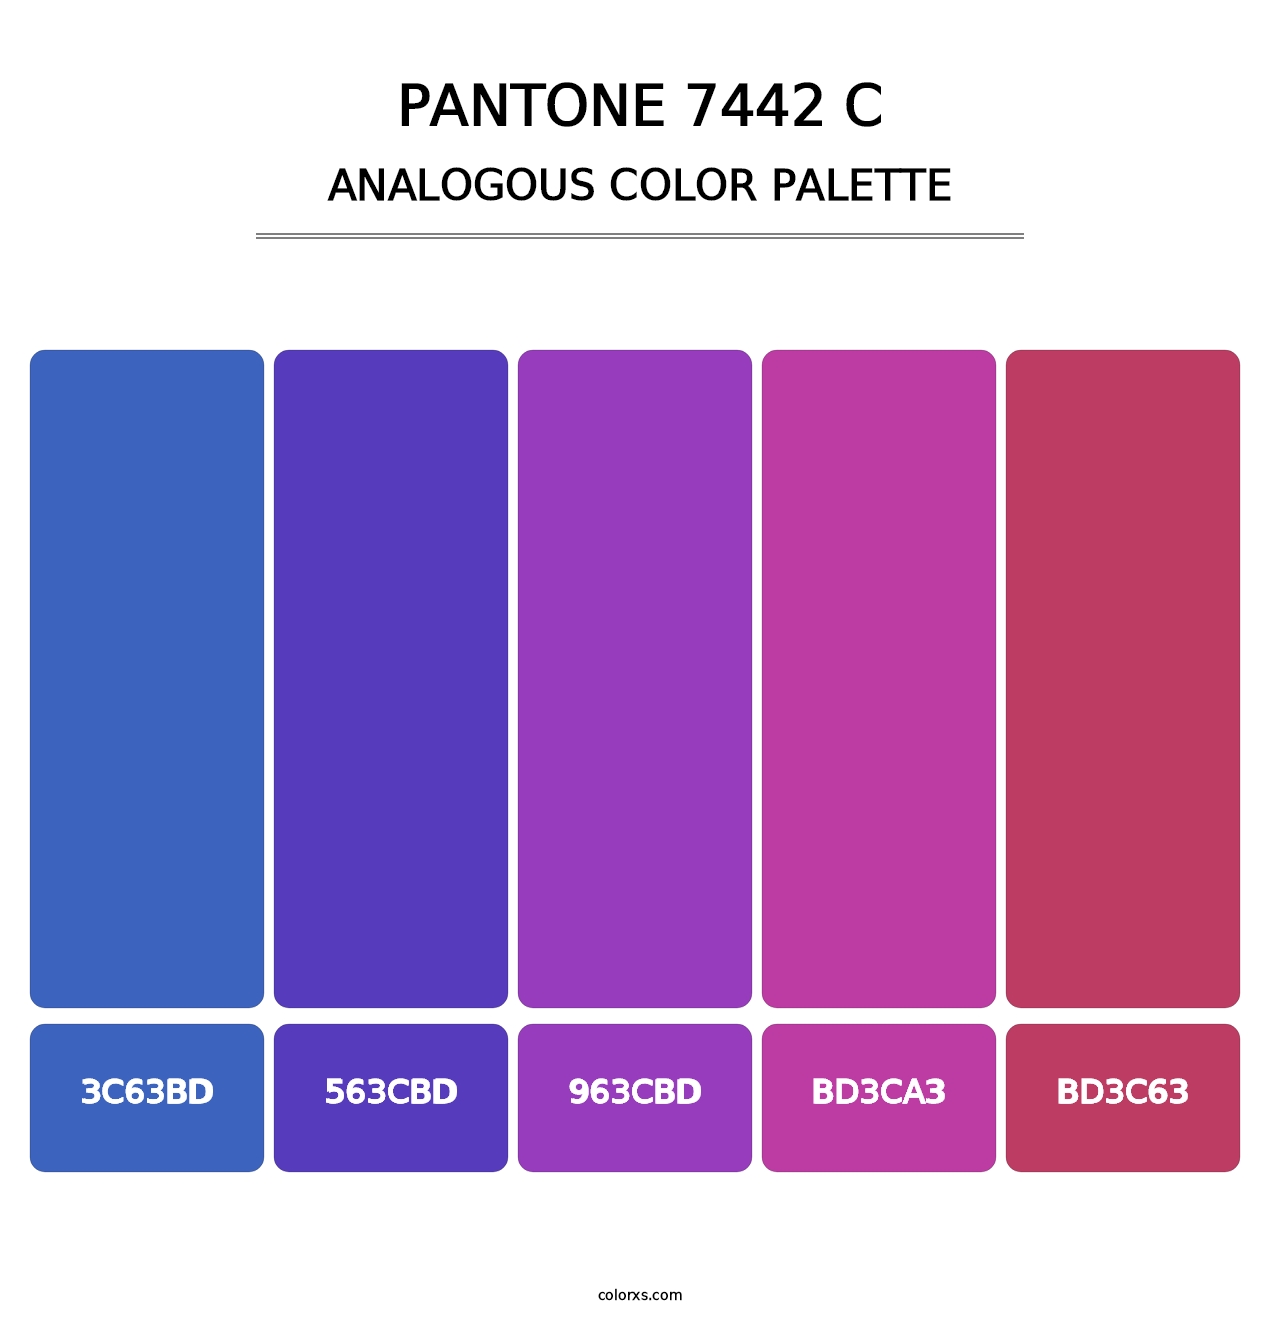 PANTONE 7442 C - Analogous Color Palette